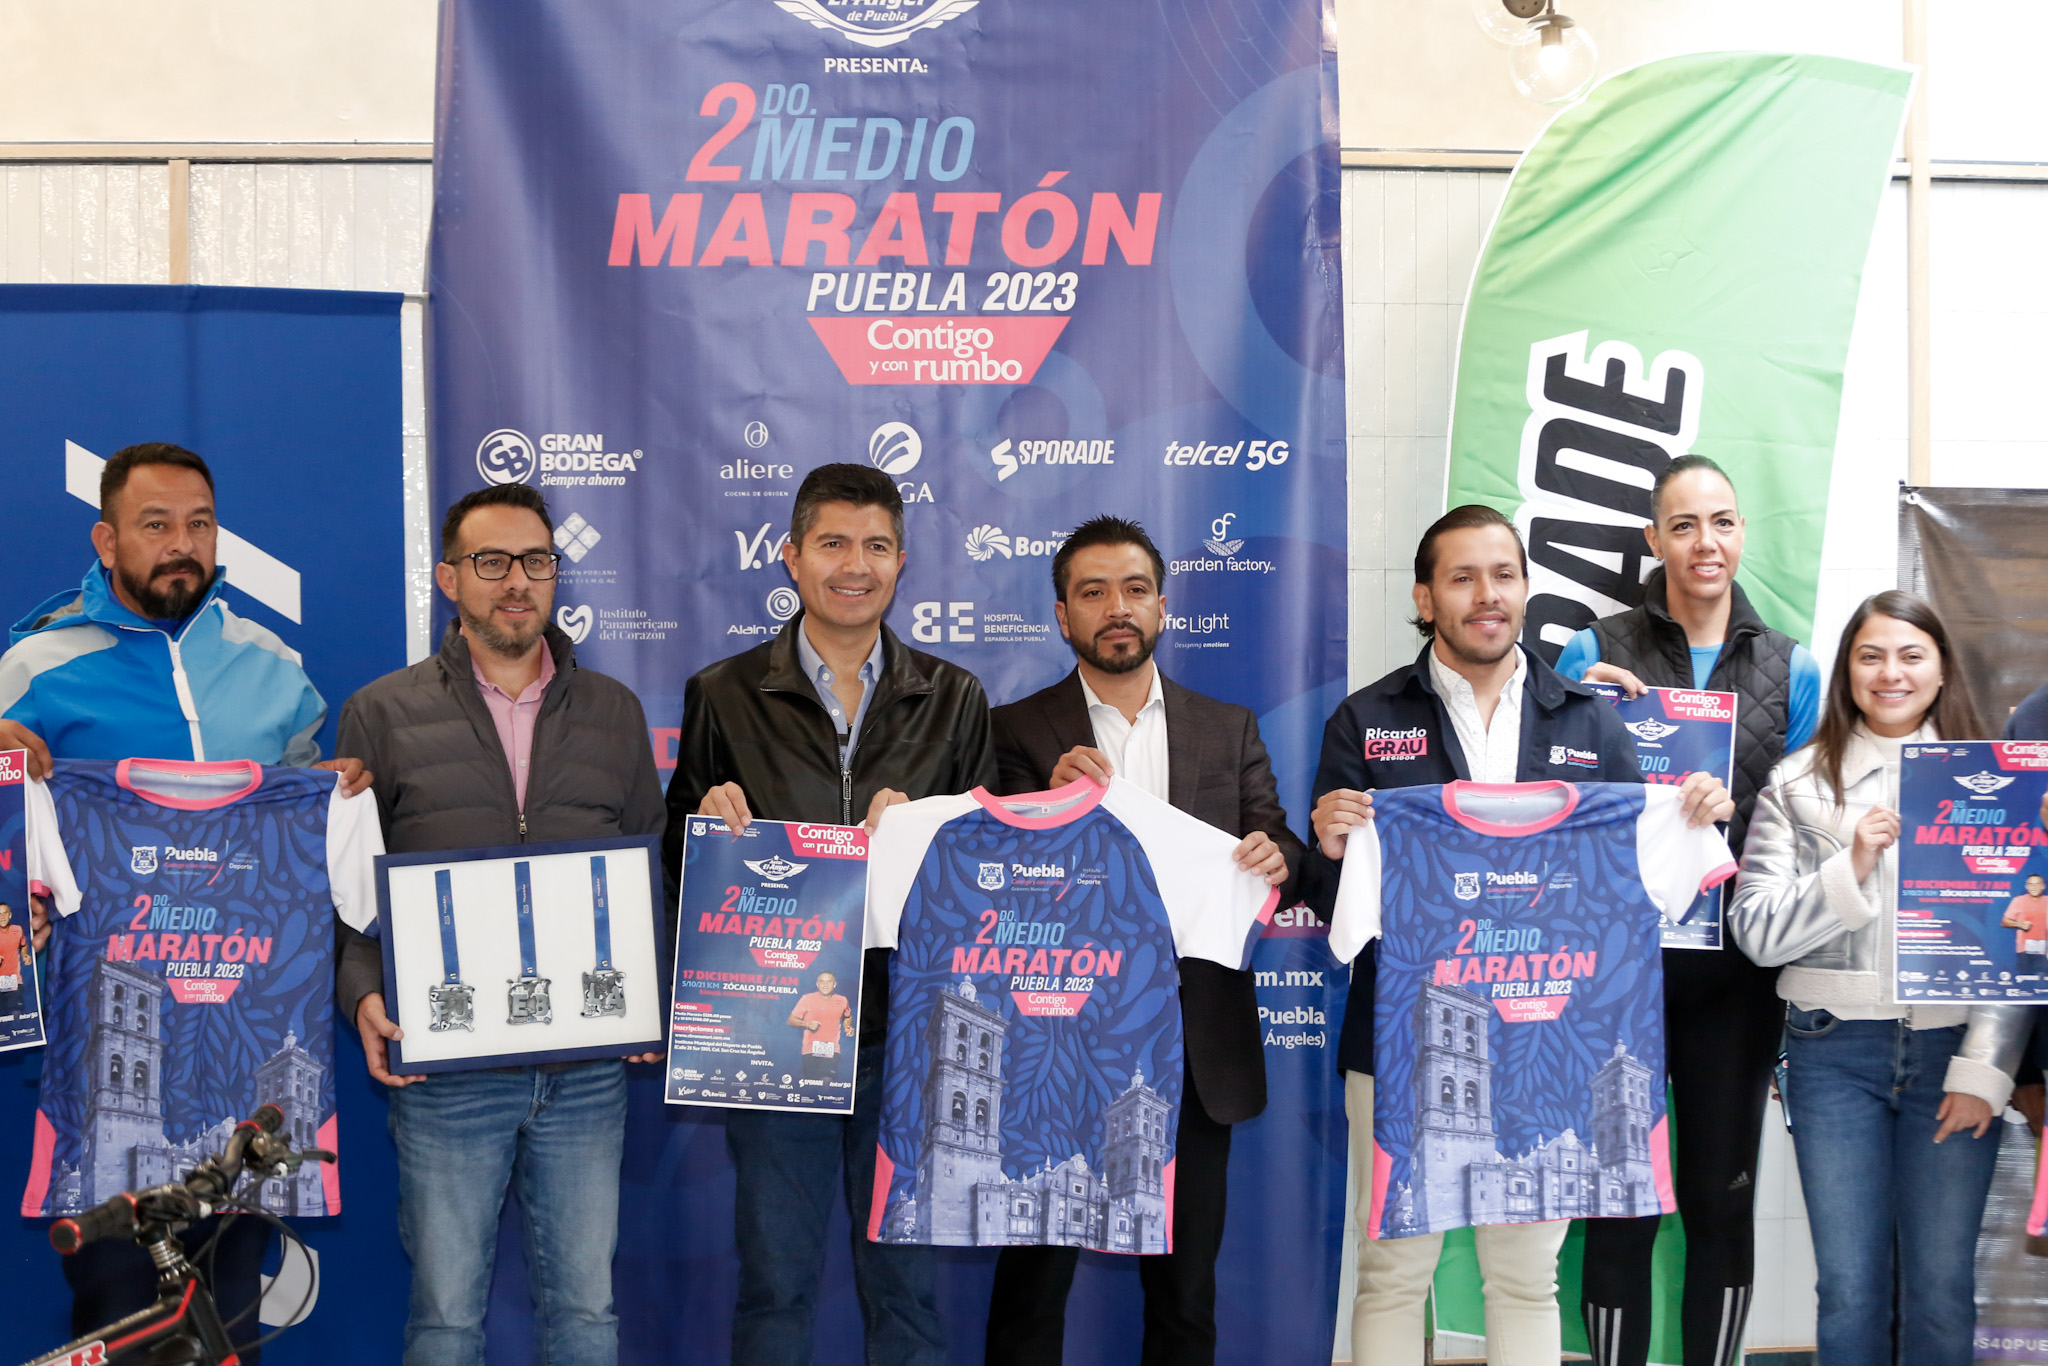 Presentan playera y medalla de Medio Maratón Puebla 2023